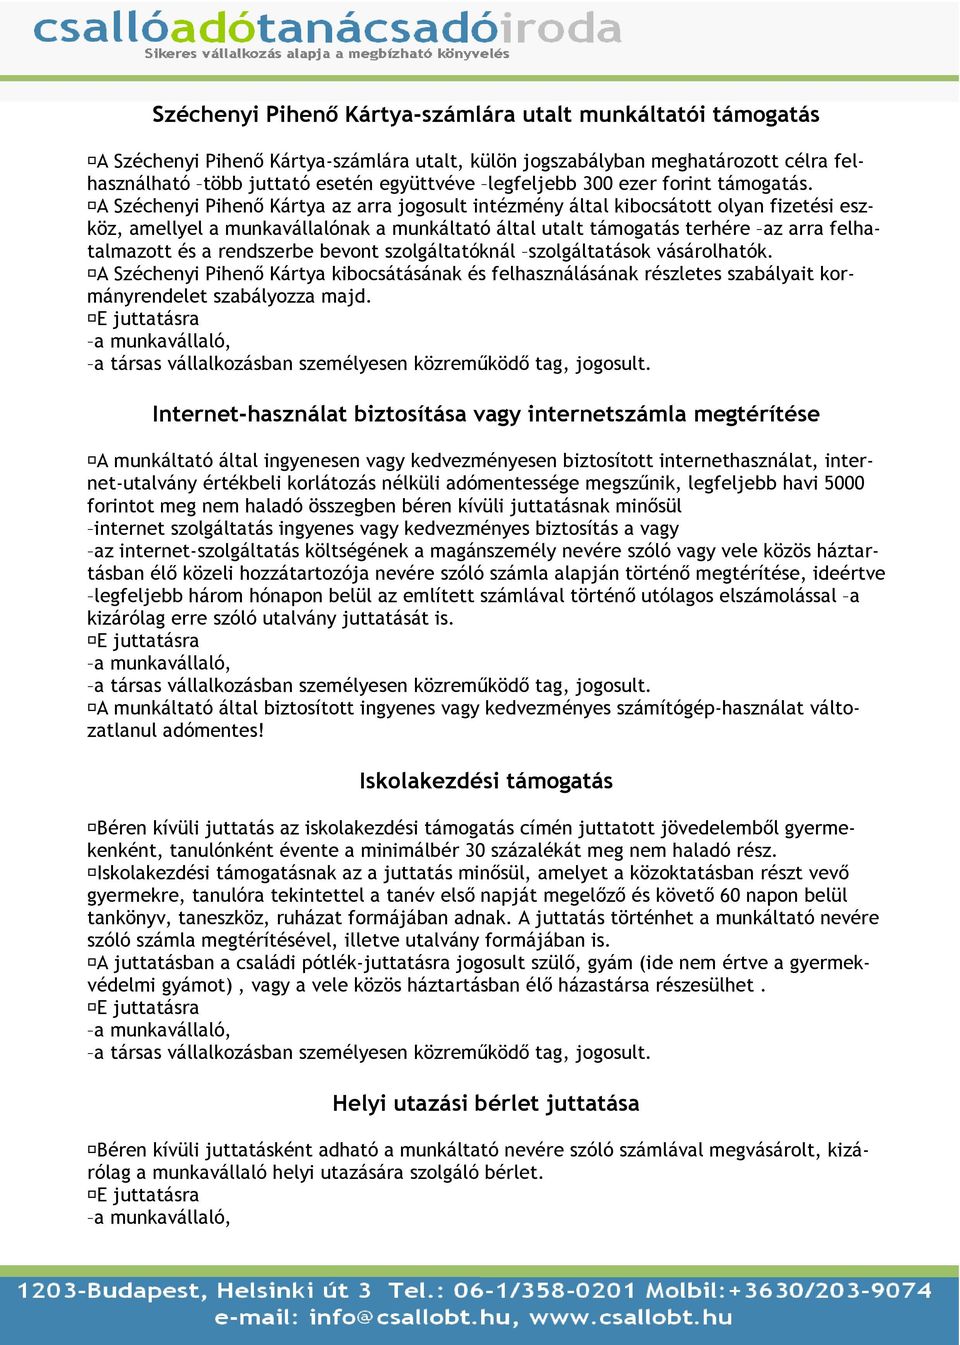 A Széchenyi Pihenı Kártya az arra jogosult intézmény által kibocsátott olyan fizetési eszköz, amellyel a munkavállalónak a munkáltató által utalt támogatás terhére az arra felhatalmazott és a